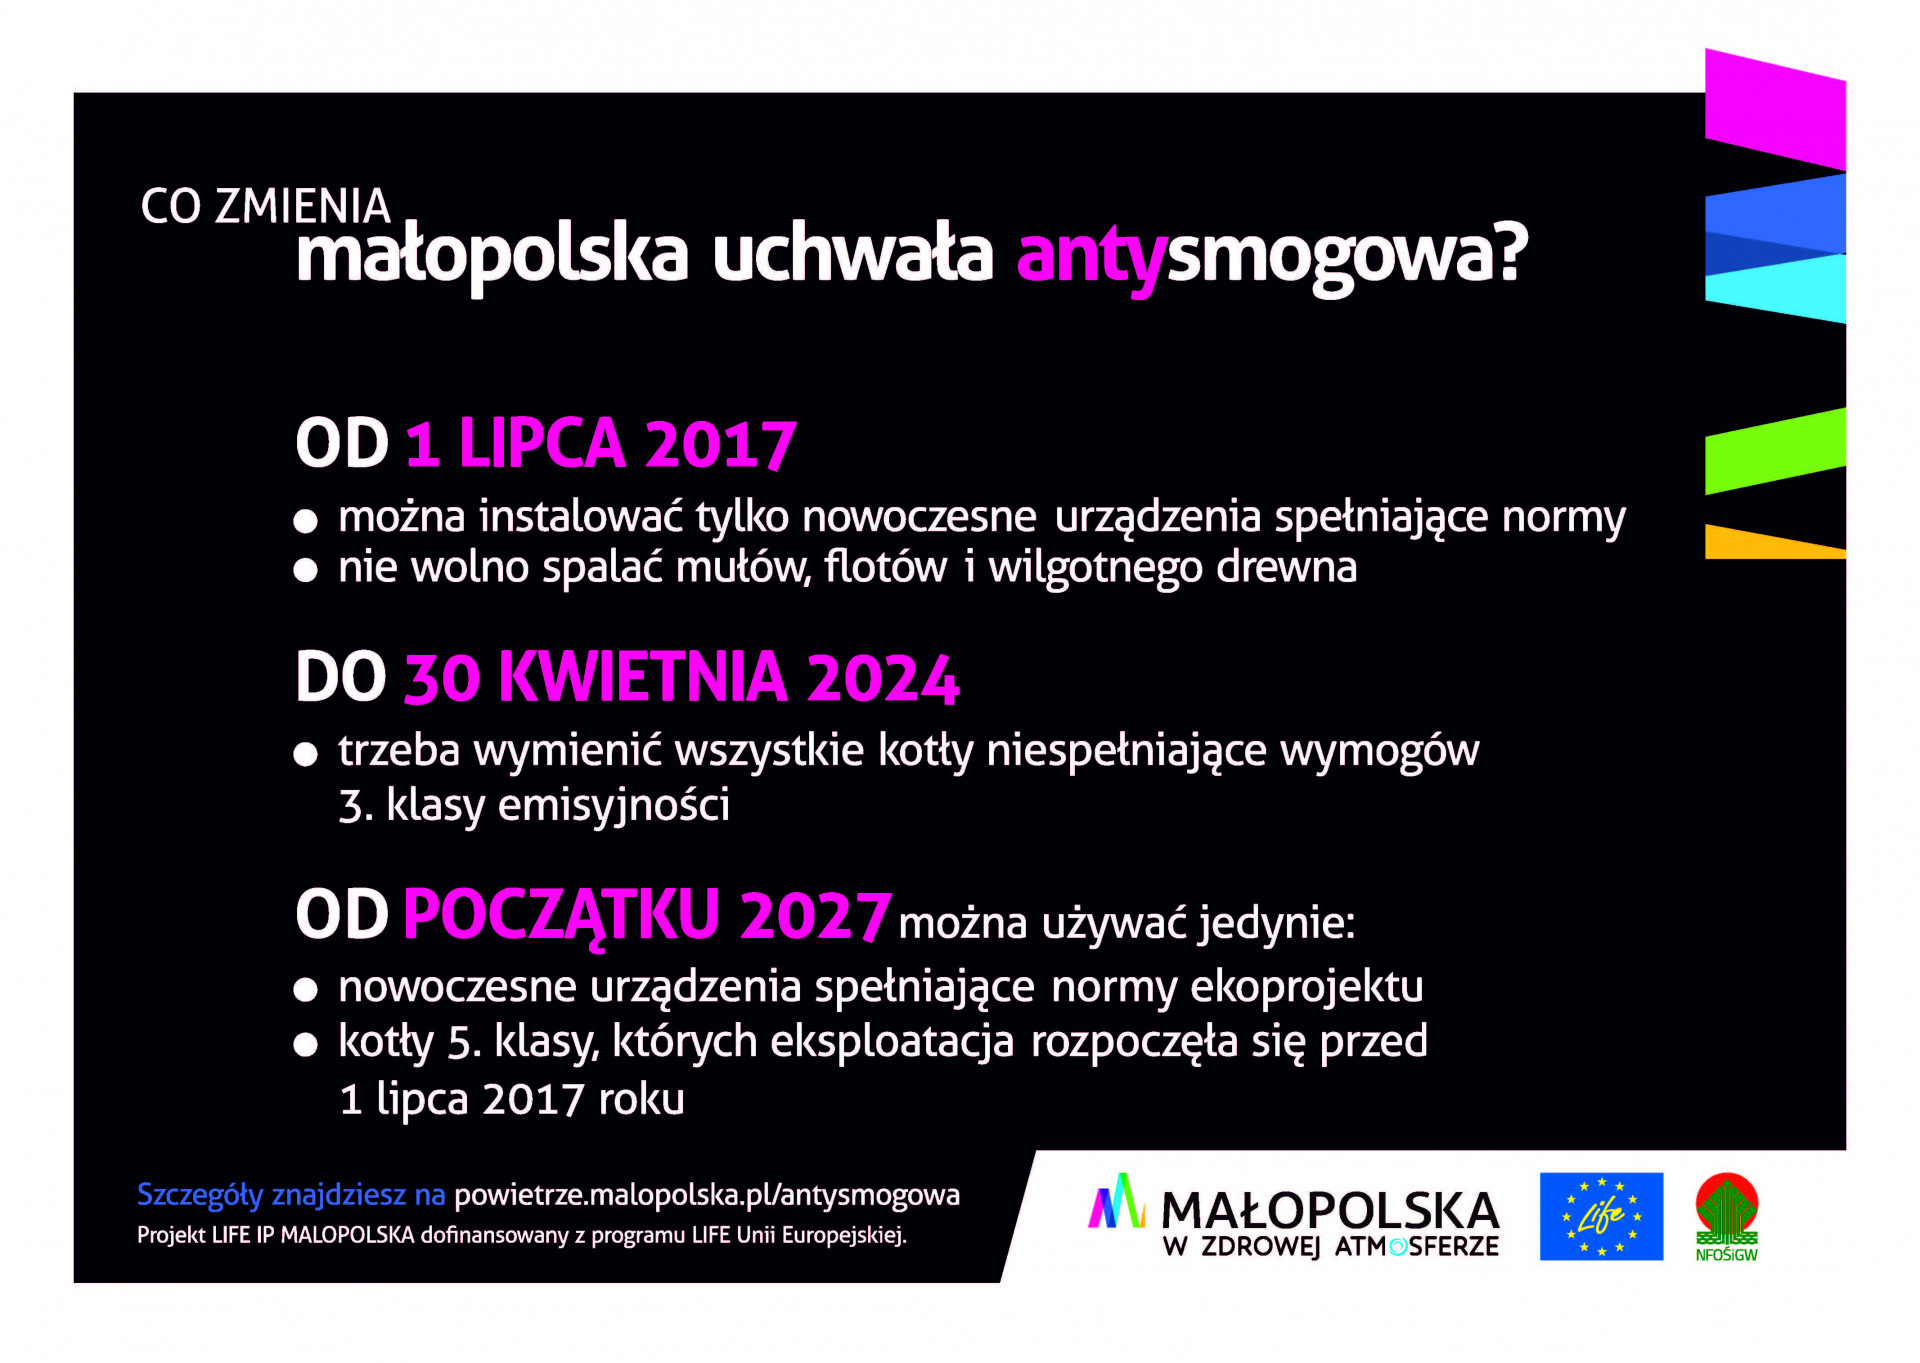 Komunikat w sprawie planowanych kontroli palenisk pod kątem przestrzegania uchwały antysmogowej dla Małopolski.